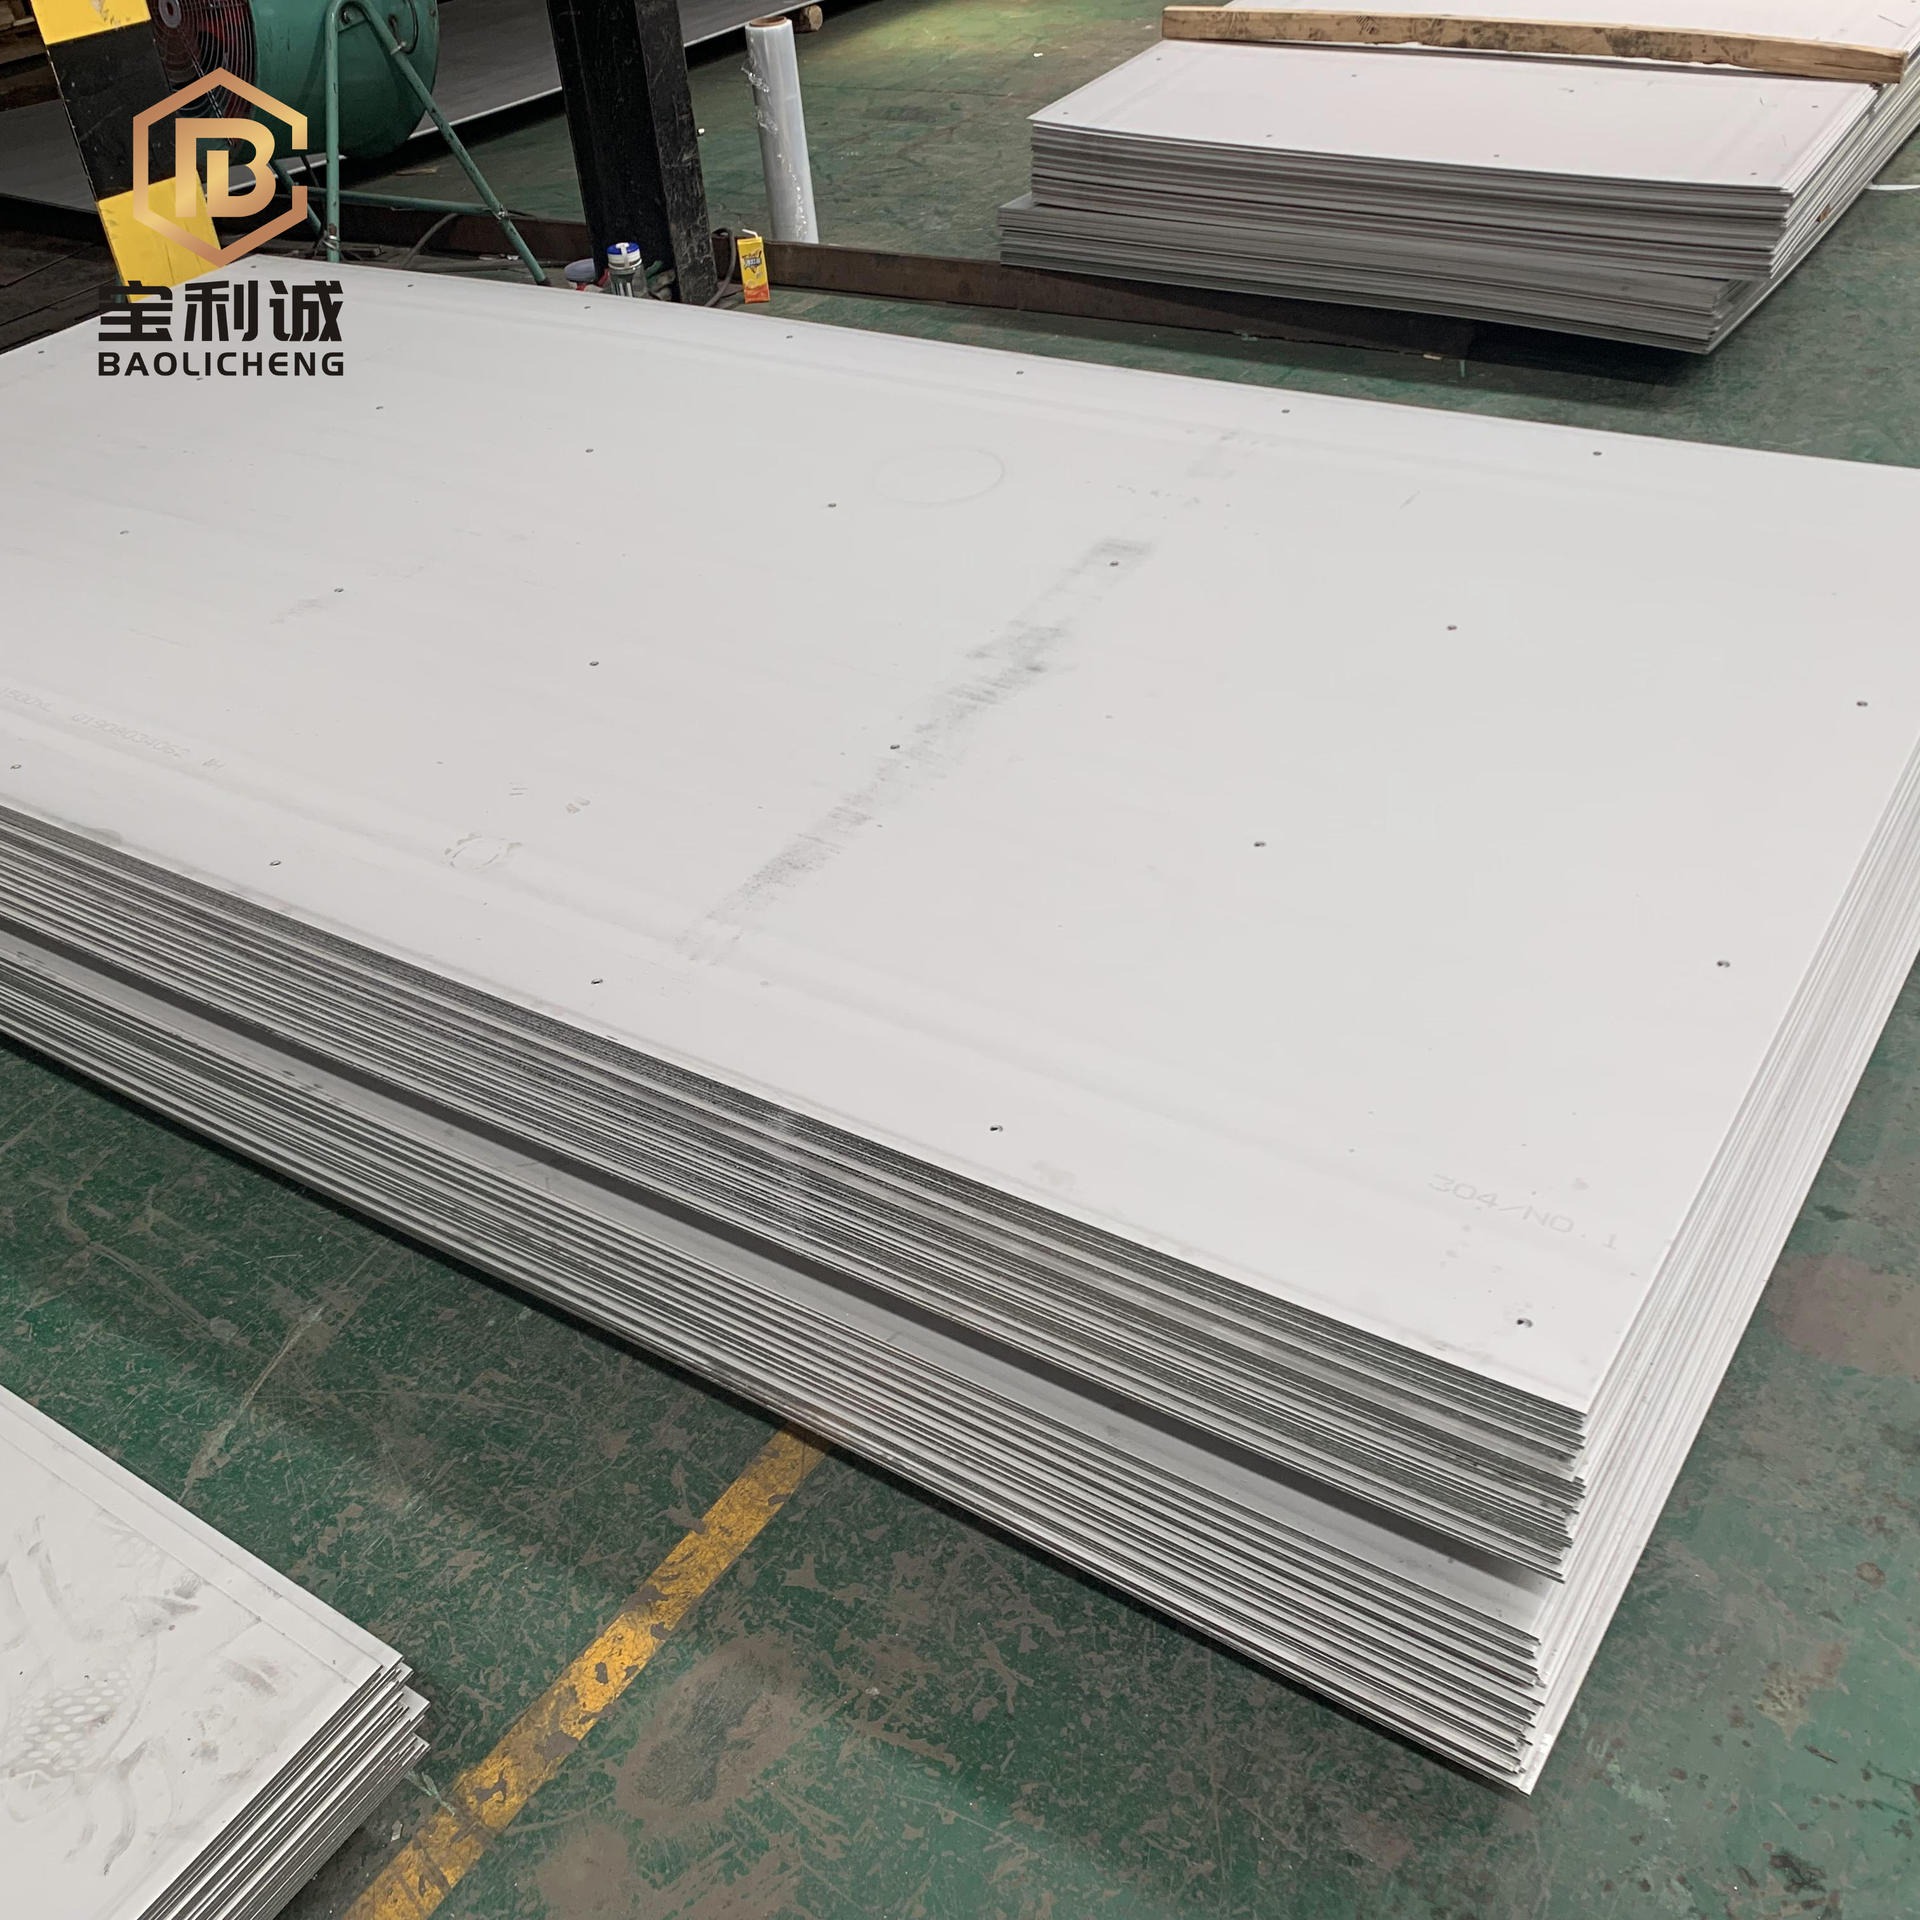 杭州供应 316不锈钢板 316L不锈钢板 不锈钢板厂家 316不锈钢板价格图片